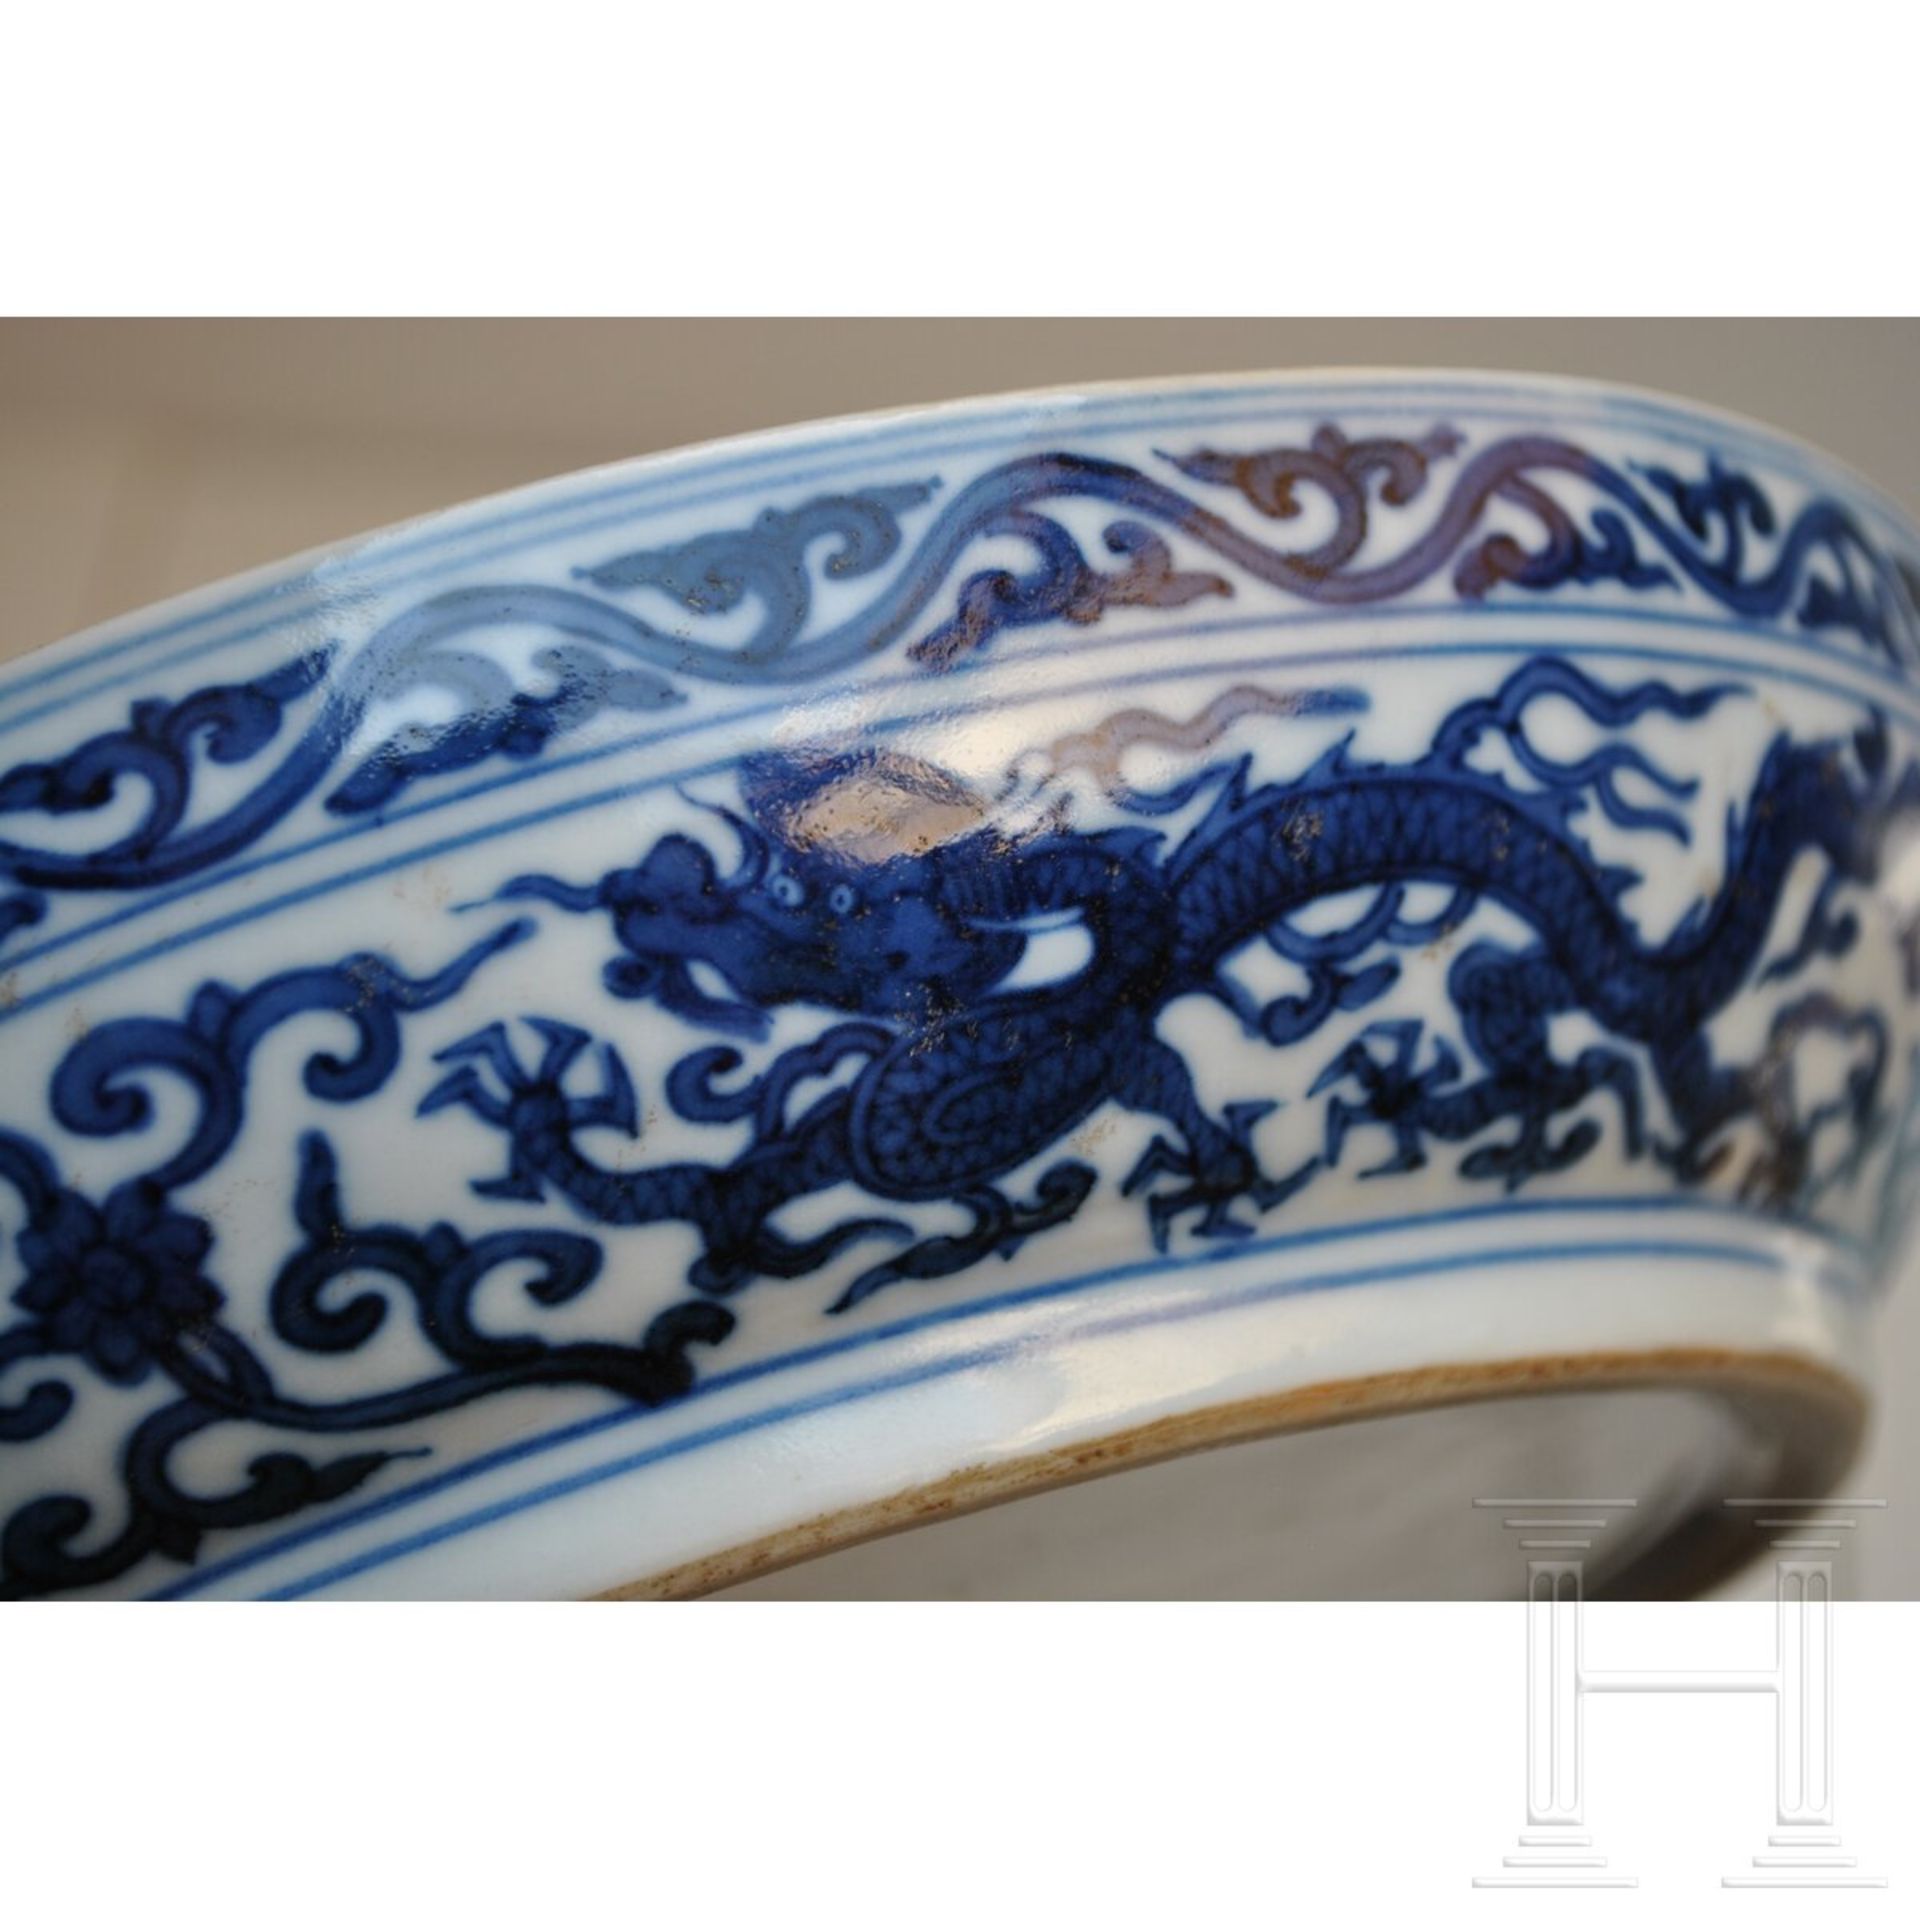 Große blaue-weiße Deckeldose mit Drache und Wanli-Sechszeichenmarke, China, 18./19. Jhdt. - Image 15 of 17